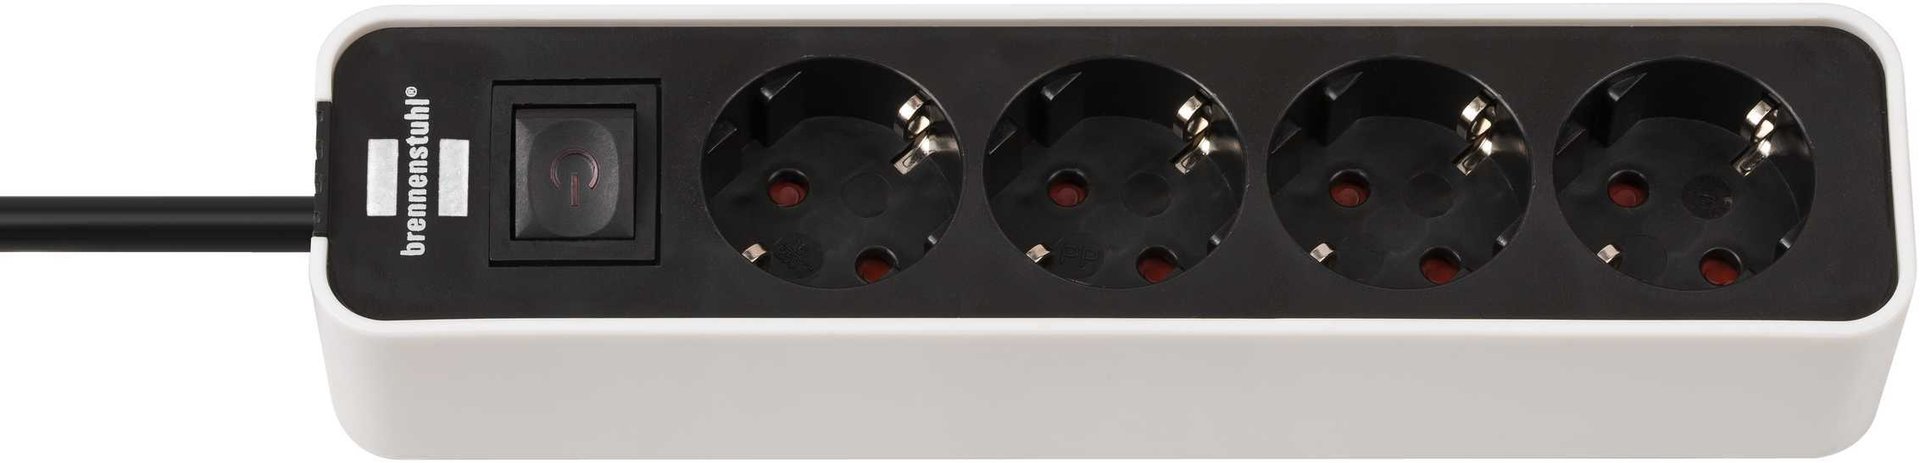 Brennenstuhl Ecolor Steckdosenleiste 4-fach (Steckerleiste mit Schalter und 1,5m Kabel) schwarz/weiß